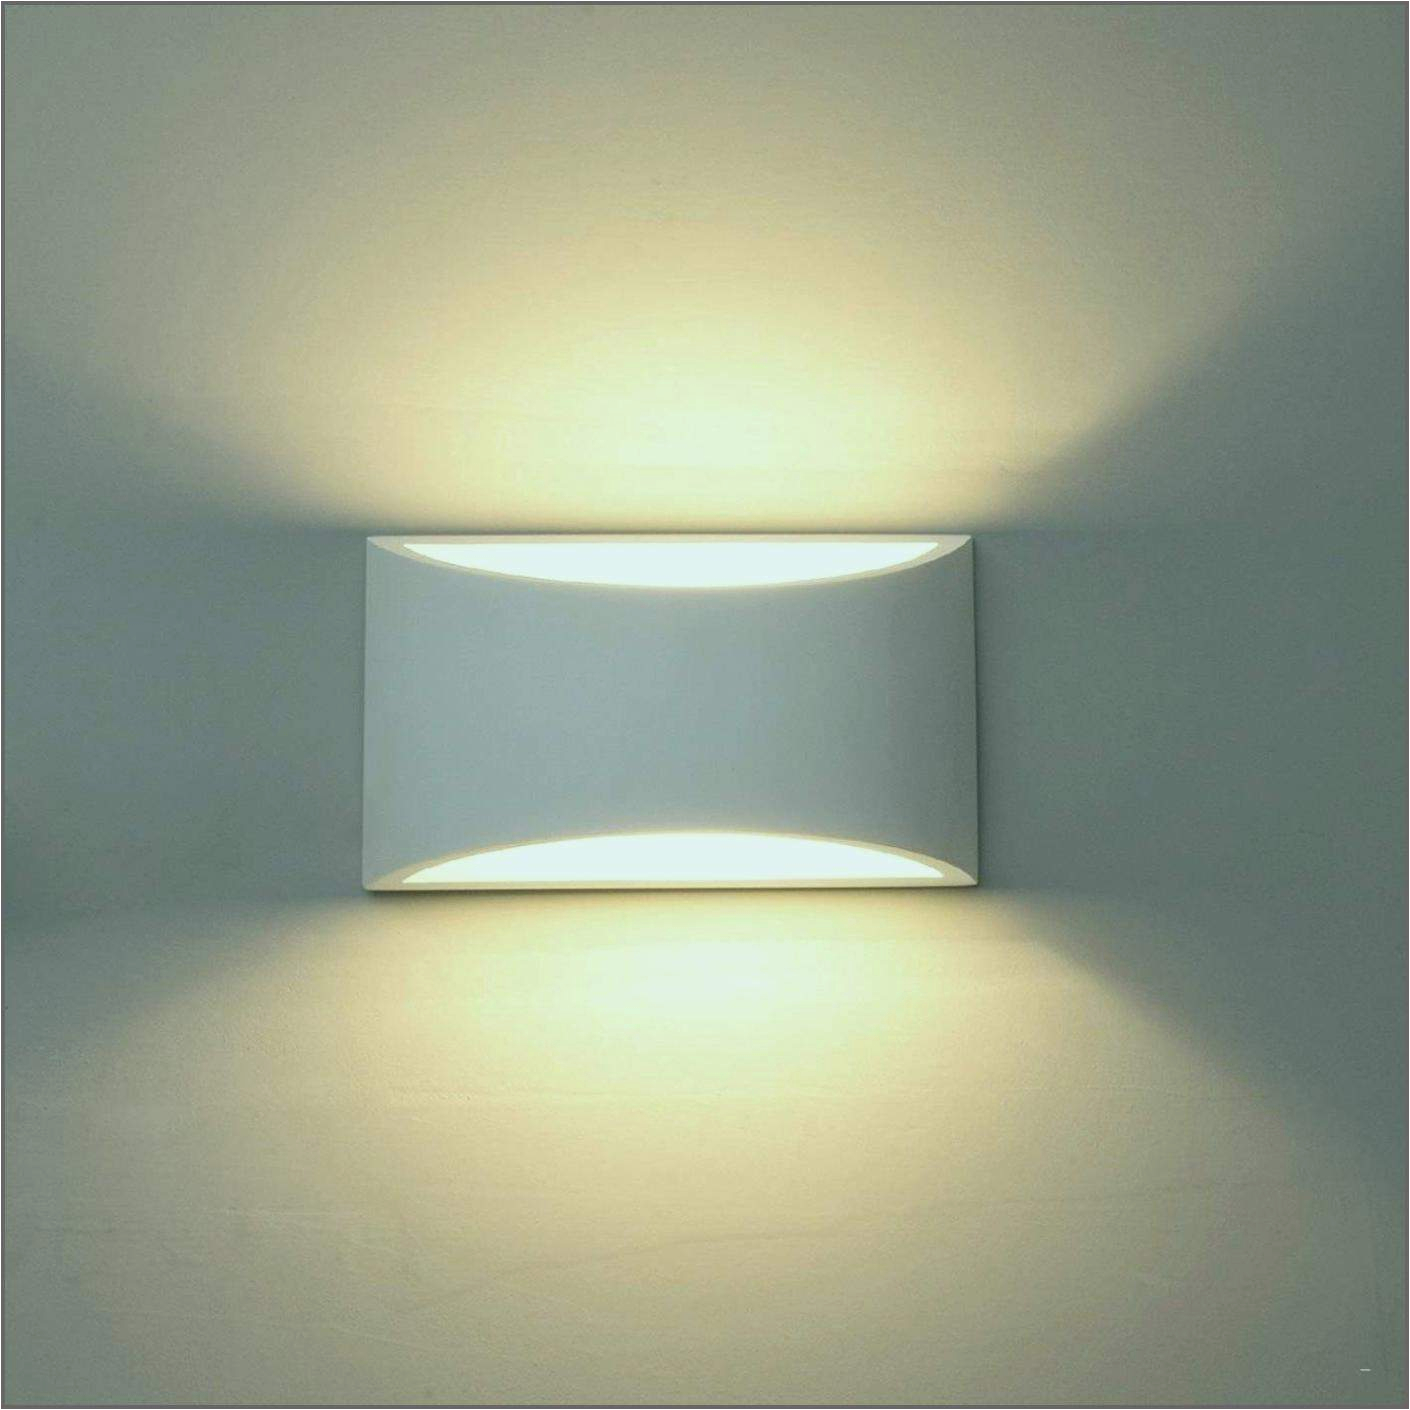 wohnzimmer lampe dimmbar das beste von 27 frisch wohnzimmer lampe dimmbar inspirierend of wohnzimmer lampe dimmbar